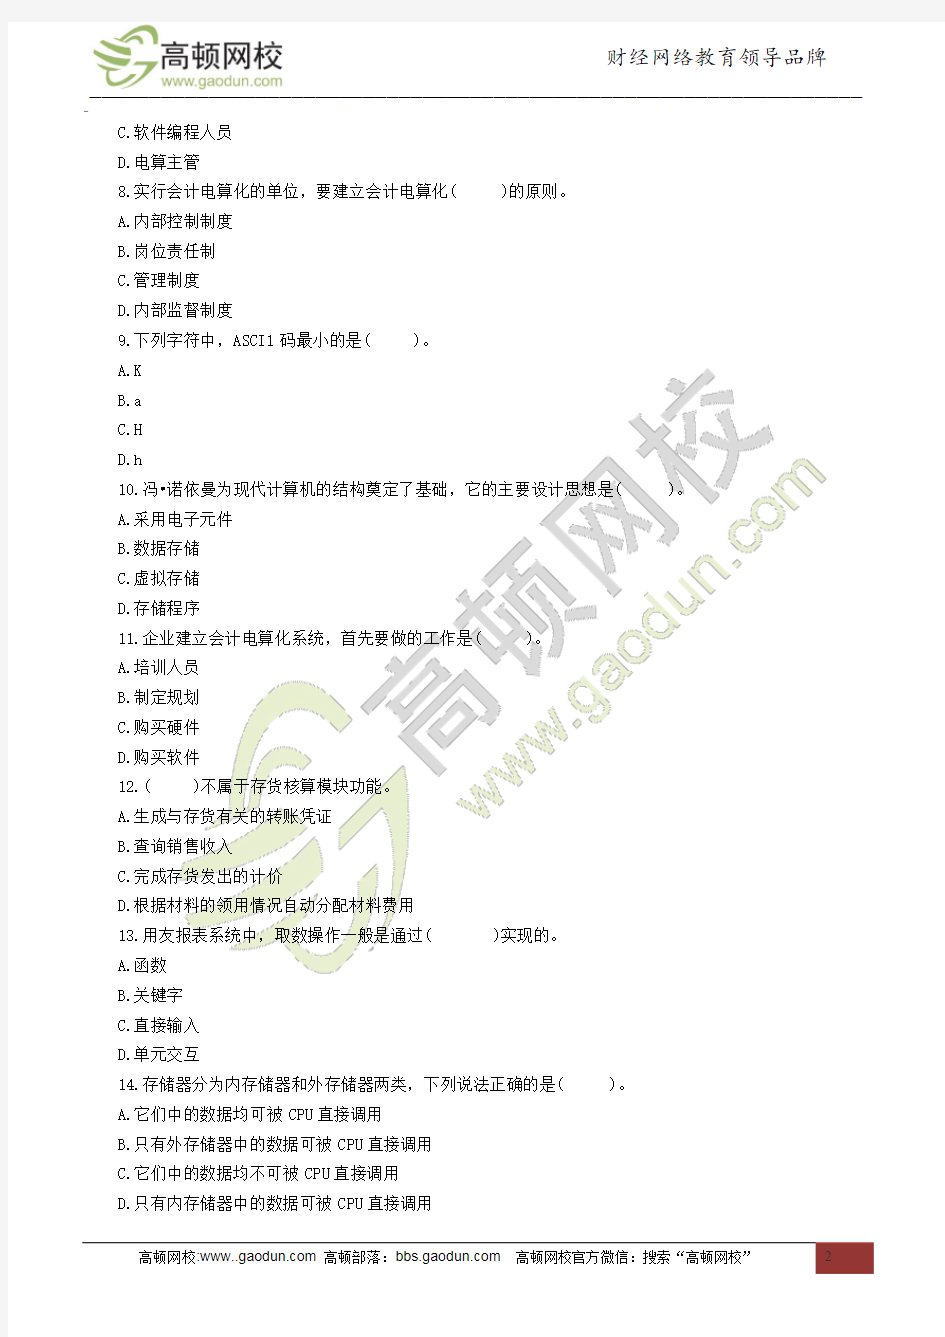 2014黑龙江会计从业考试《电算化》考前押密卷(一)